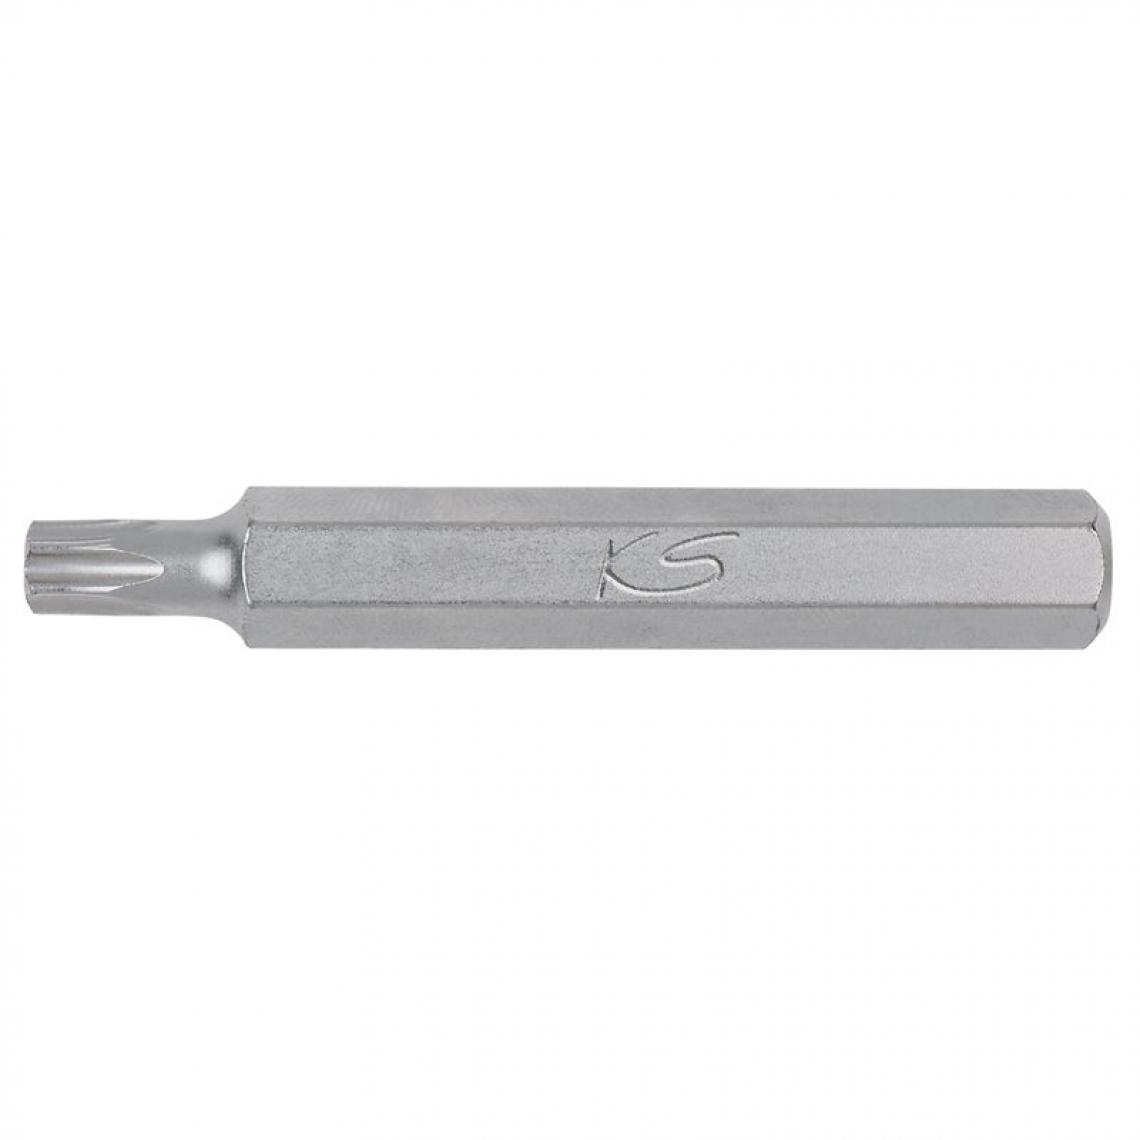 Ks Tools - Embout de vissage KS TORX percé 30 - entrainement 10 mm, longueur75 mm - Accessoires meulage